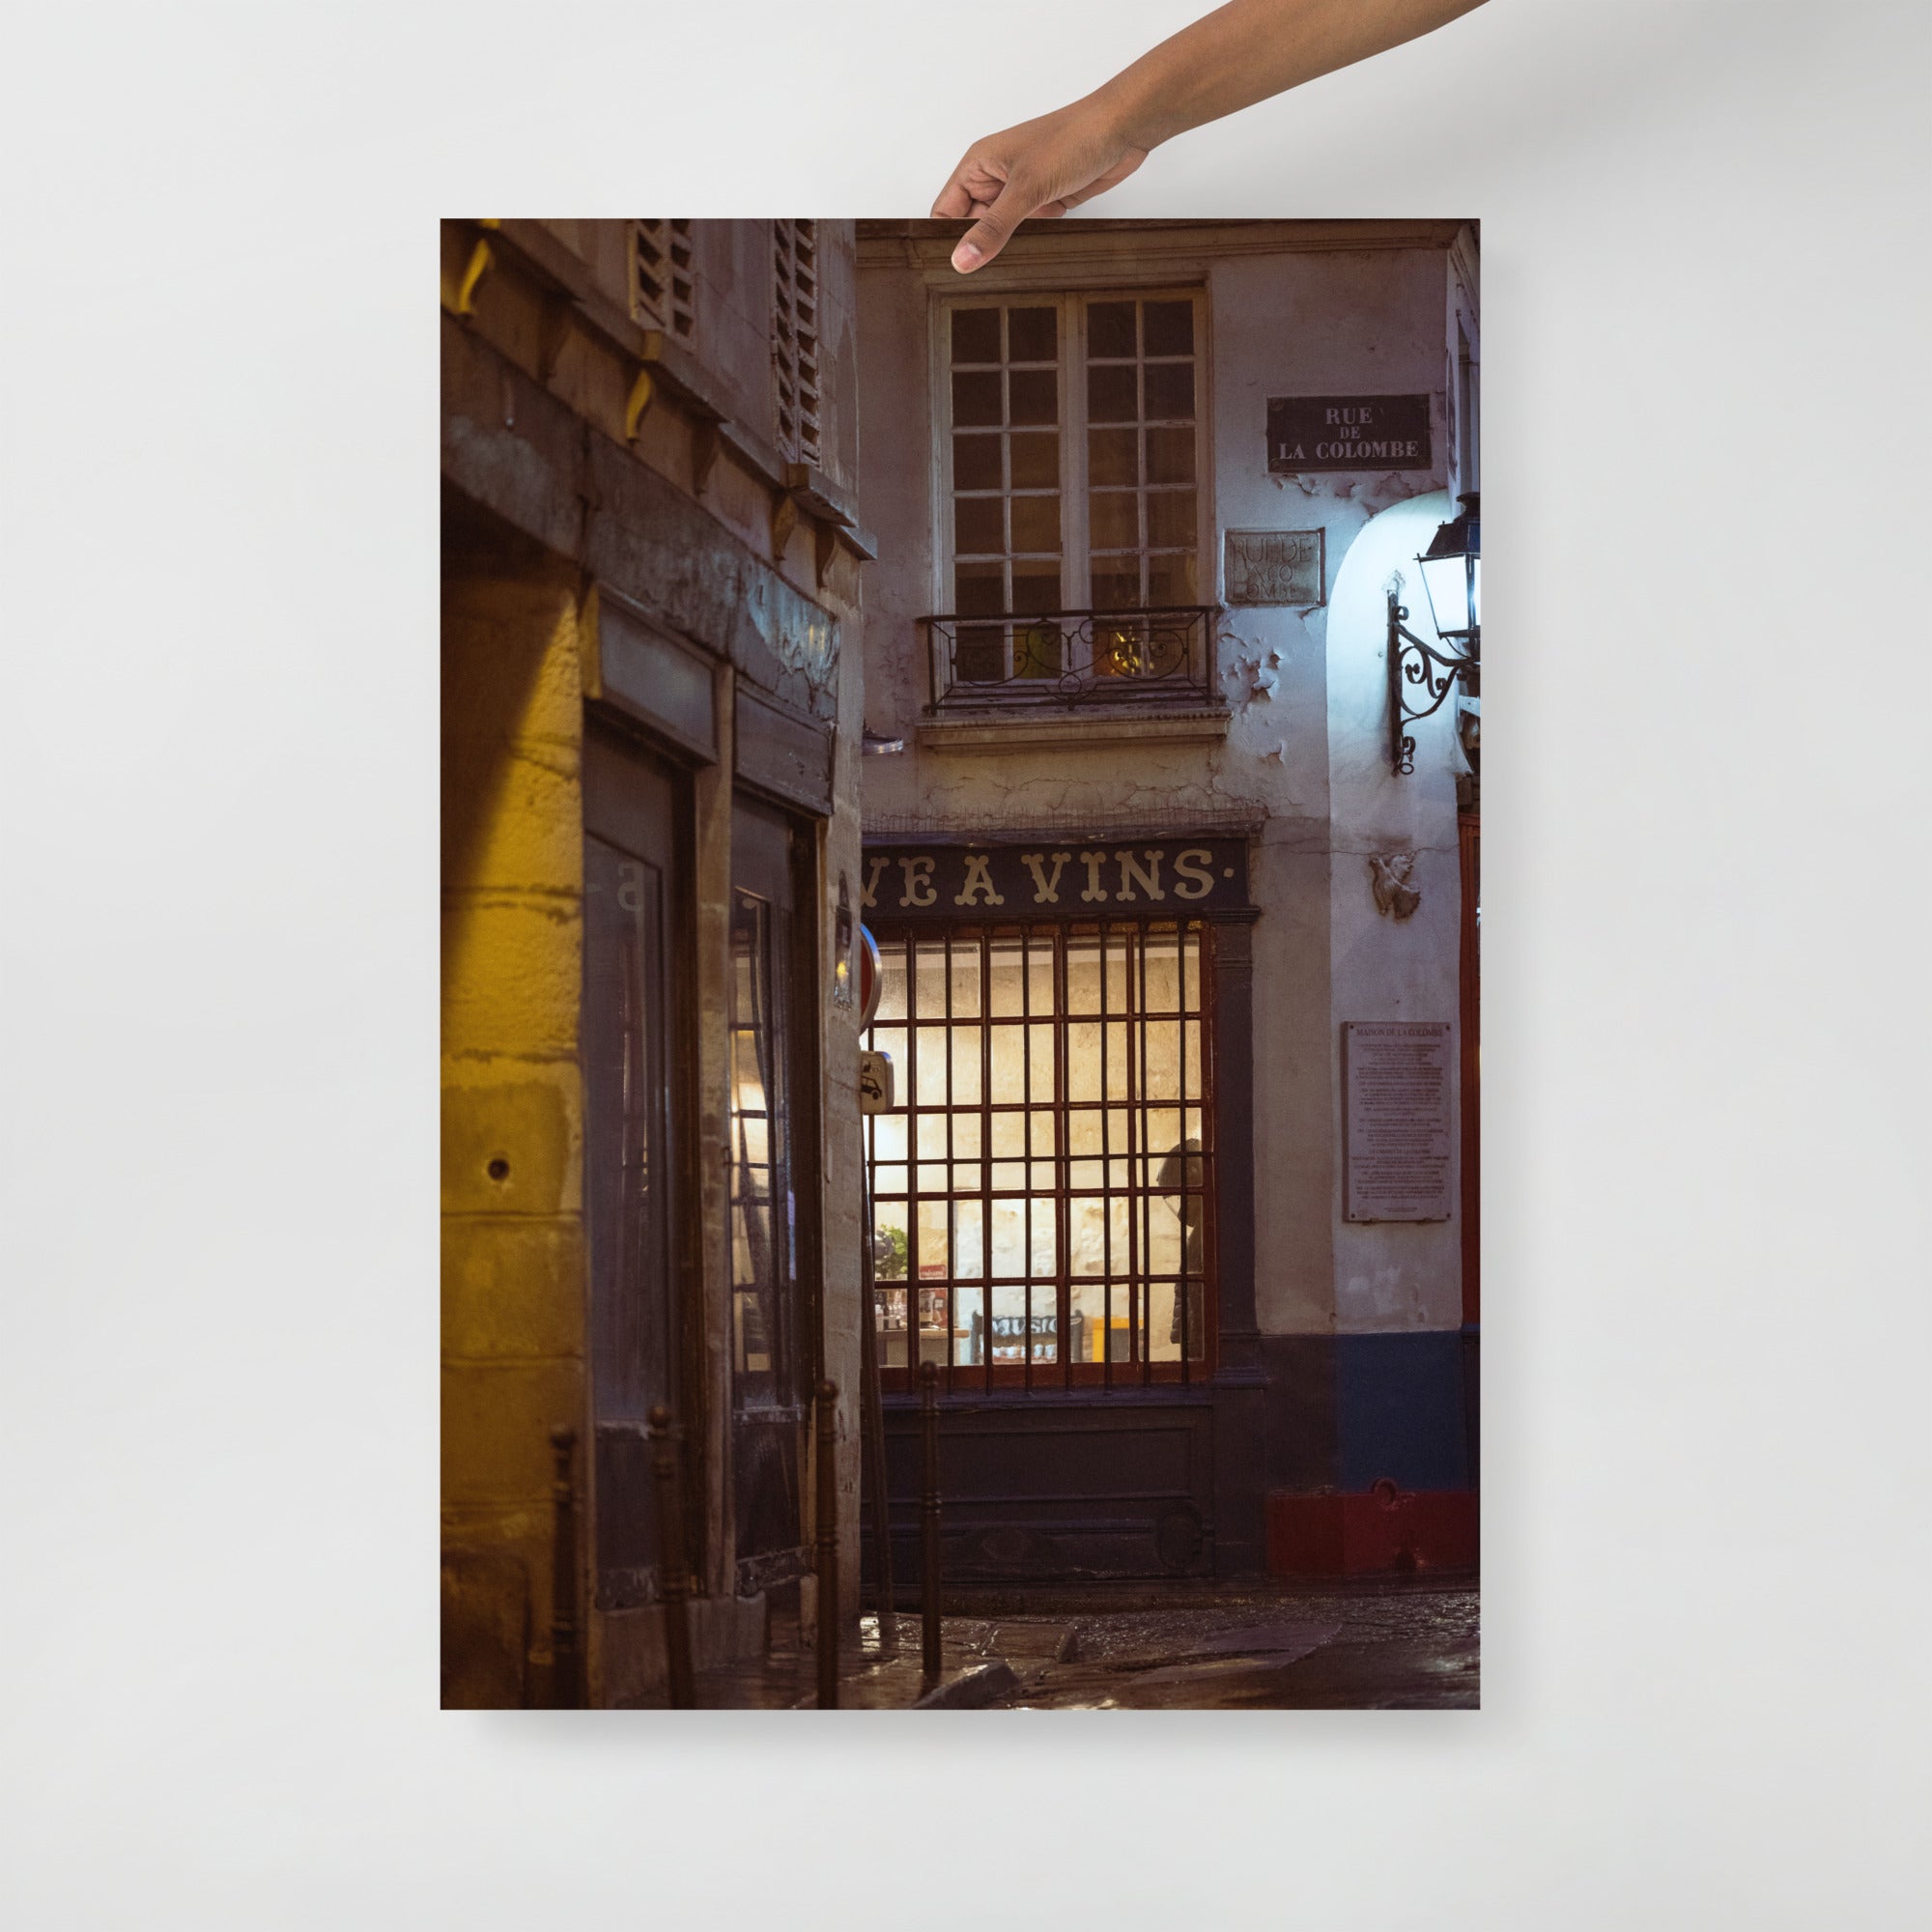 Poster mural - Cave a vins – PPhotographie de rue à Paris – Poster photo, poster XXL, Photo d’art, photographie murale et des posters muraux des photographies de rue unique au monde. La boutique de posters créée par un Photographe français.